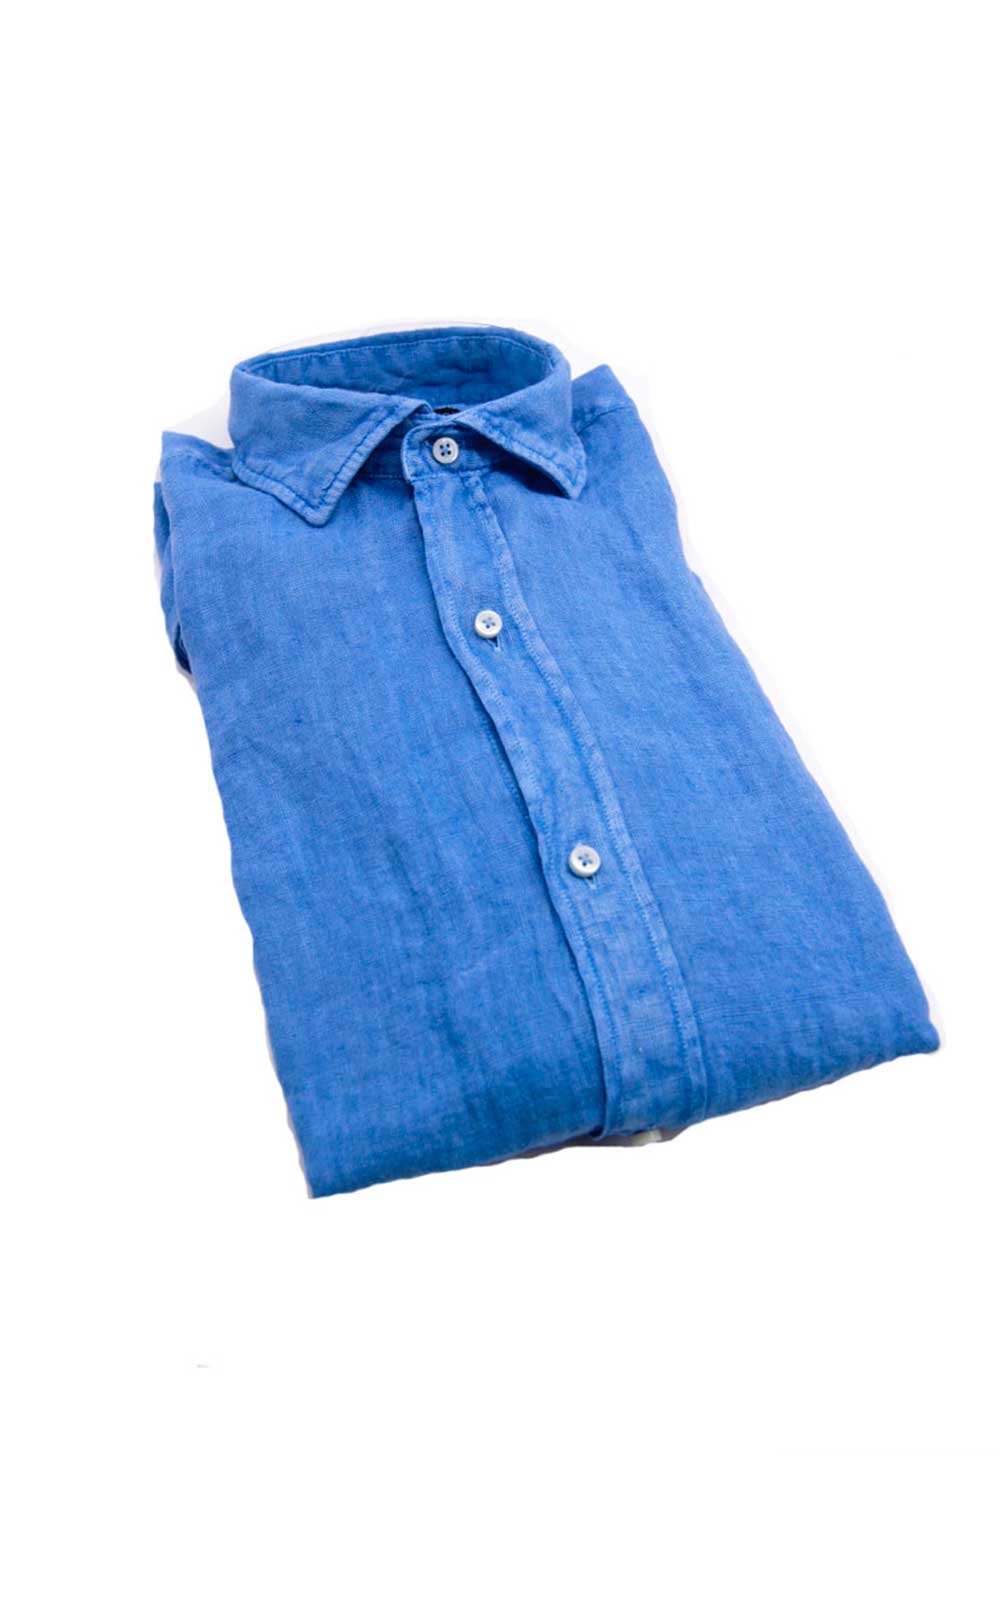 Electric blue linen shirt